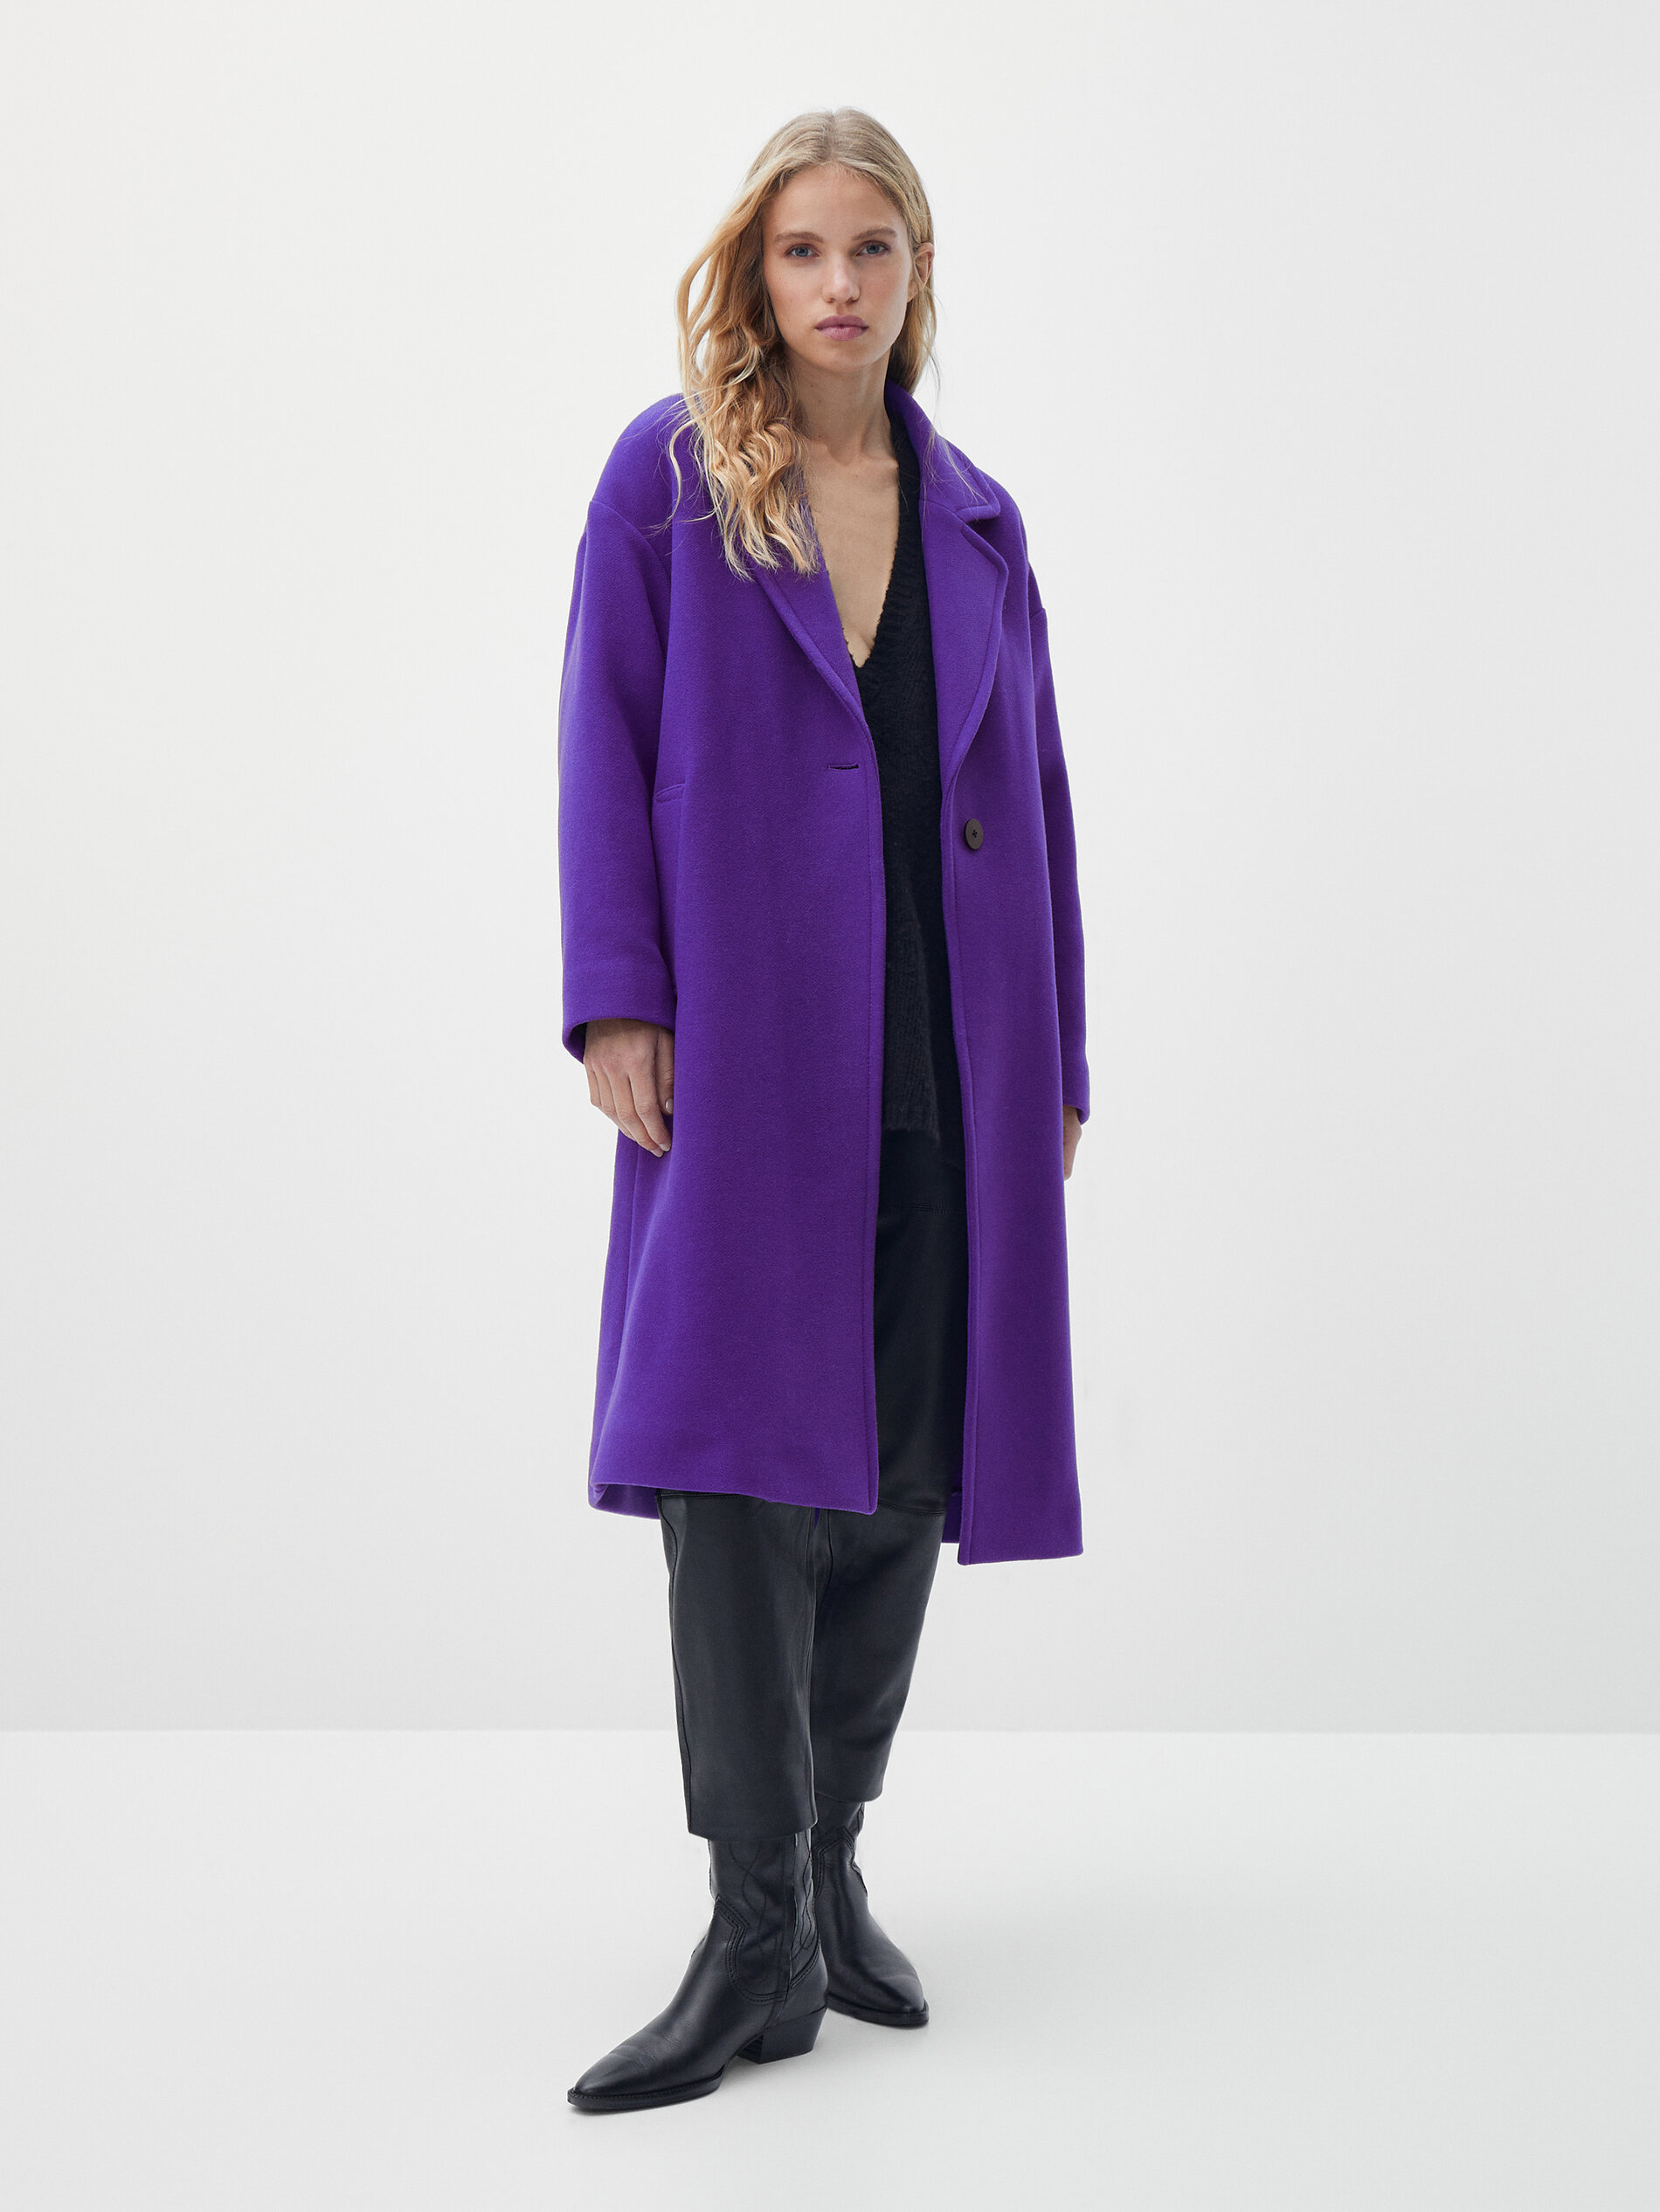 Massimo Dutti Интернет Магазин Женской Одежды Каталог